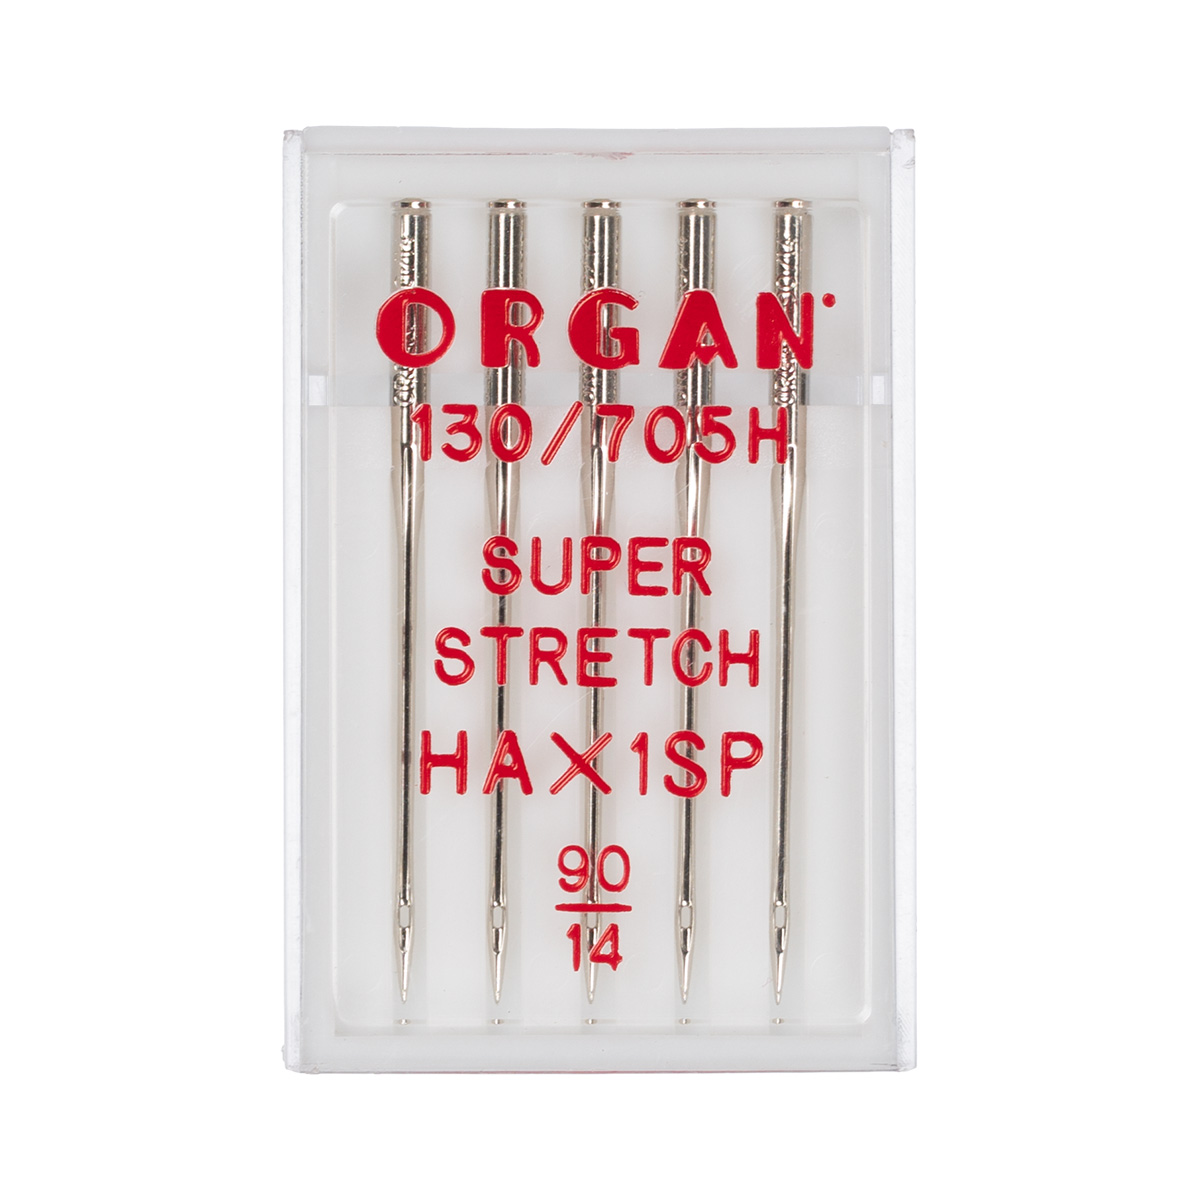 Набор игл для швейной машины Organ 5шт супер стрейч №90